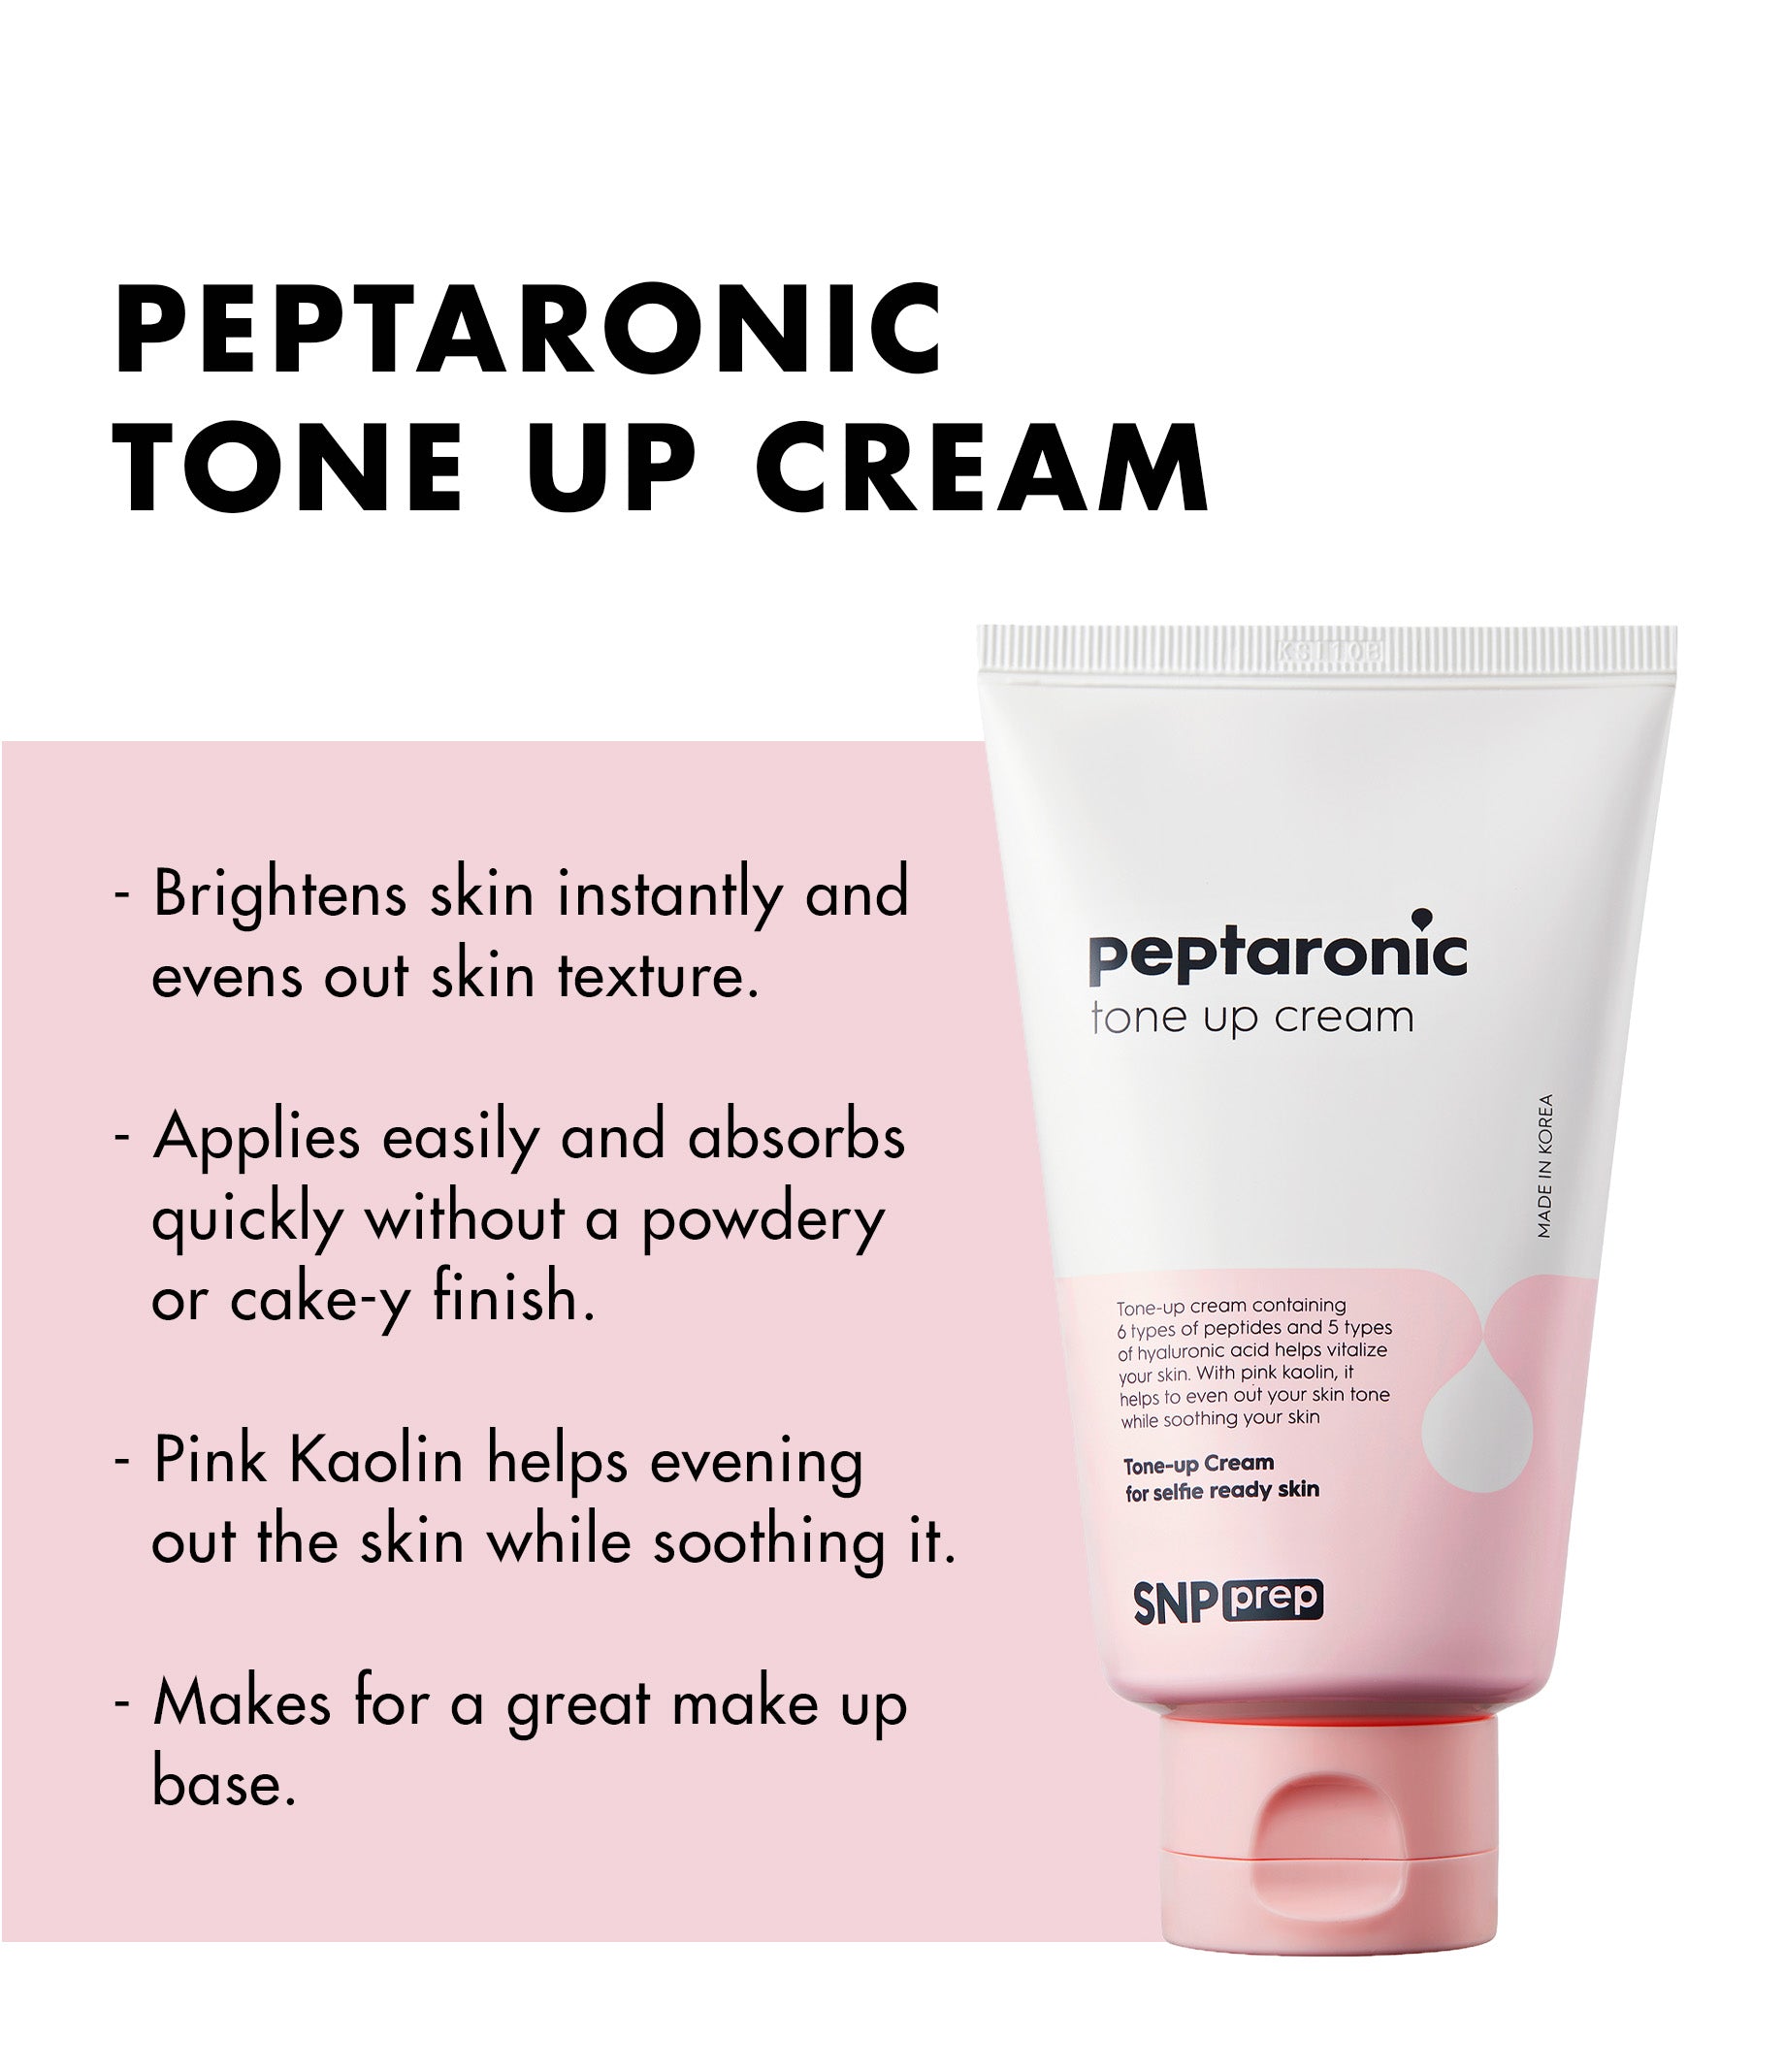 SNP PREP Peptaronic Tone up Cream (100ml)